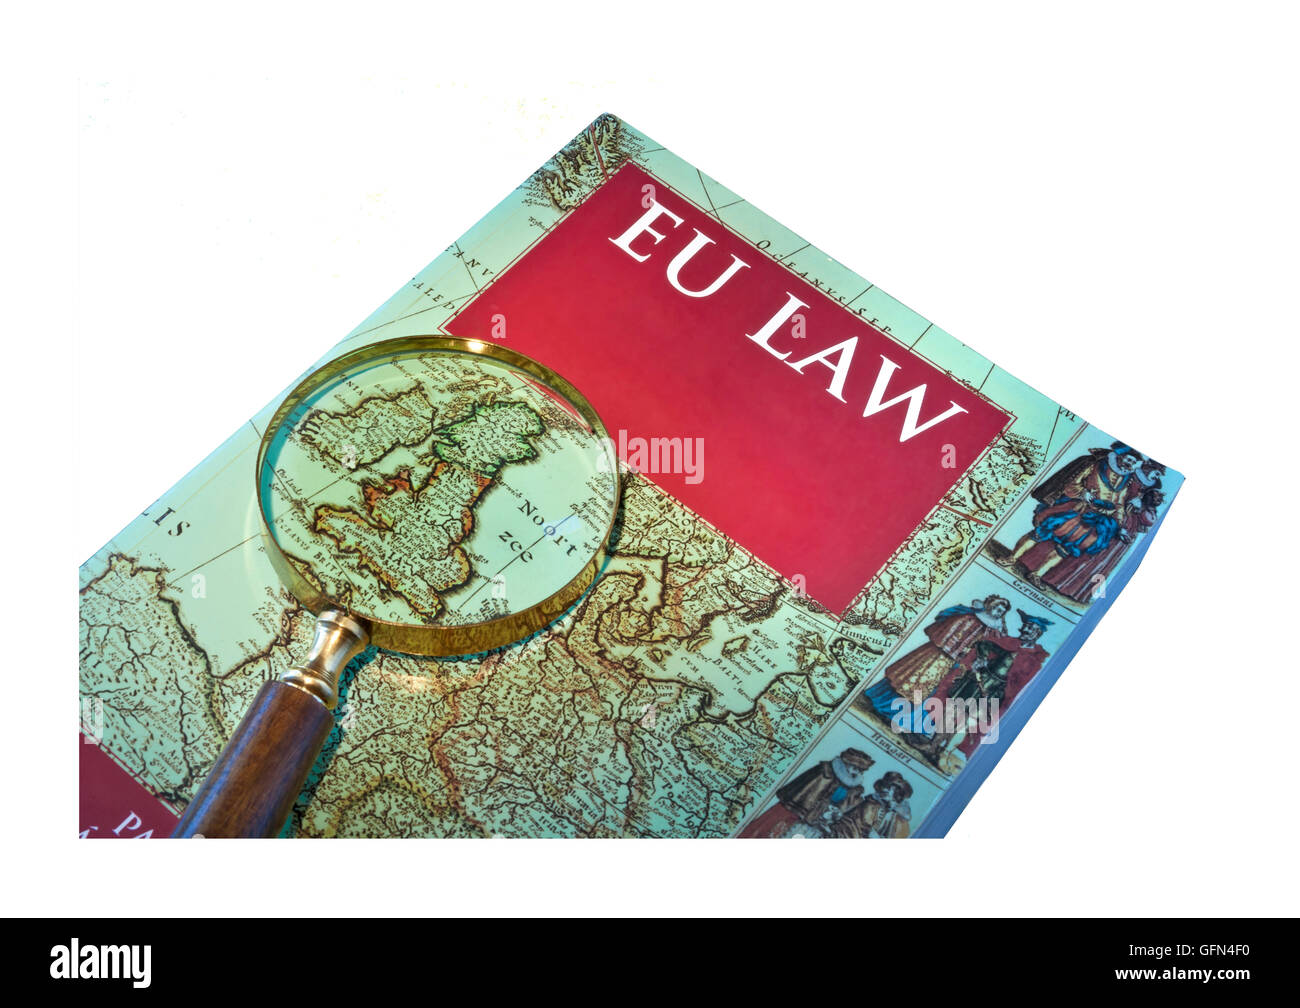 CARTE du Royaume-UNI DU BREXIT image conceptuelle du livre de droit de l'UE sur bureau avec loupe mettant en évidence le Royaume-Uni dans la carte de l'Europe Banque D'Images